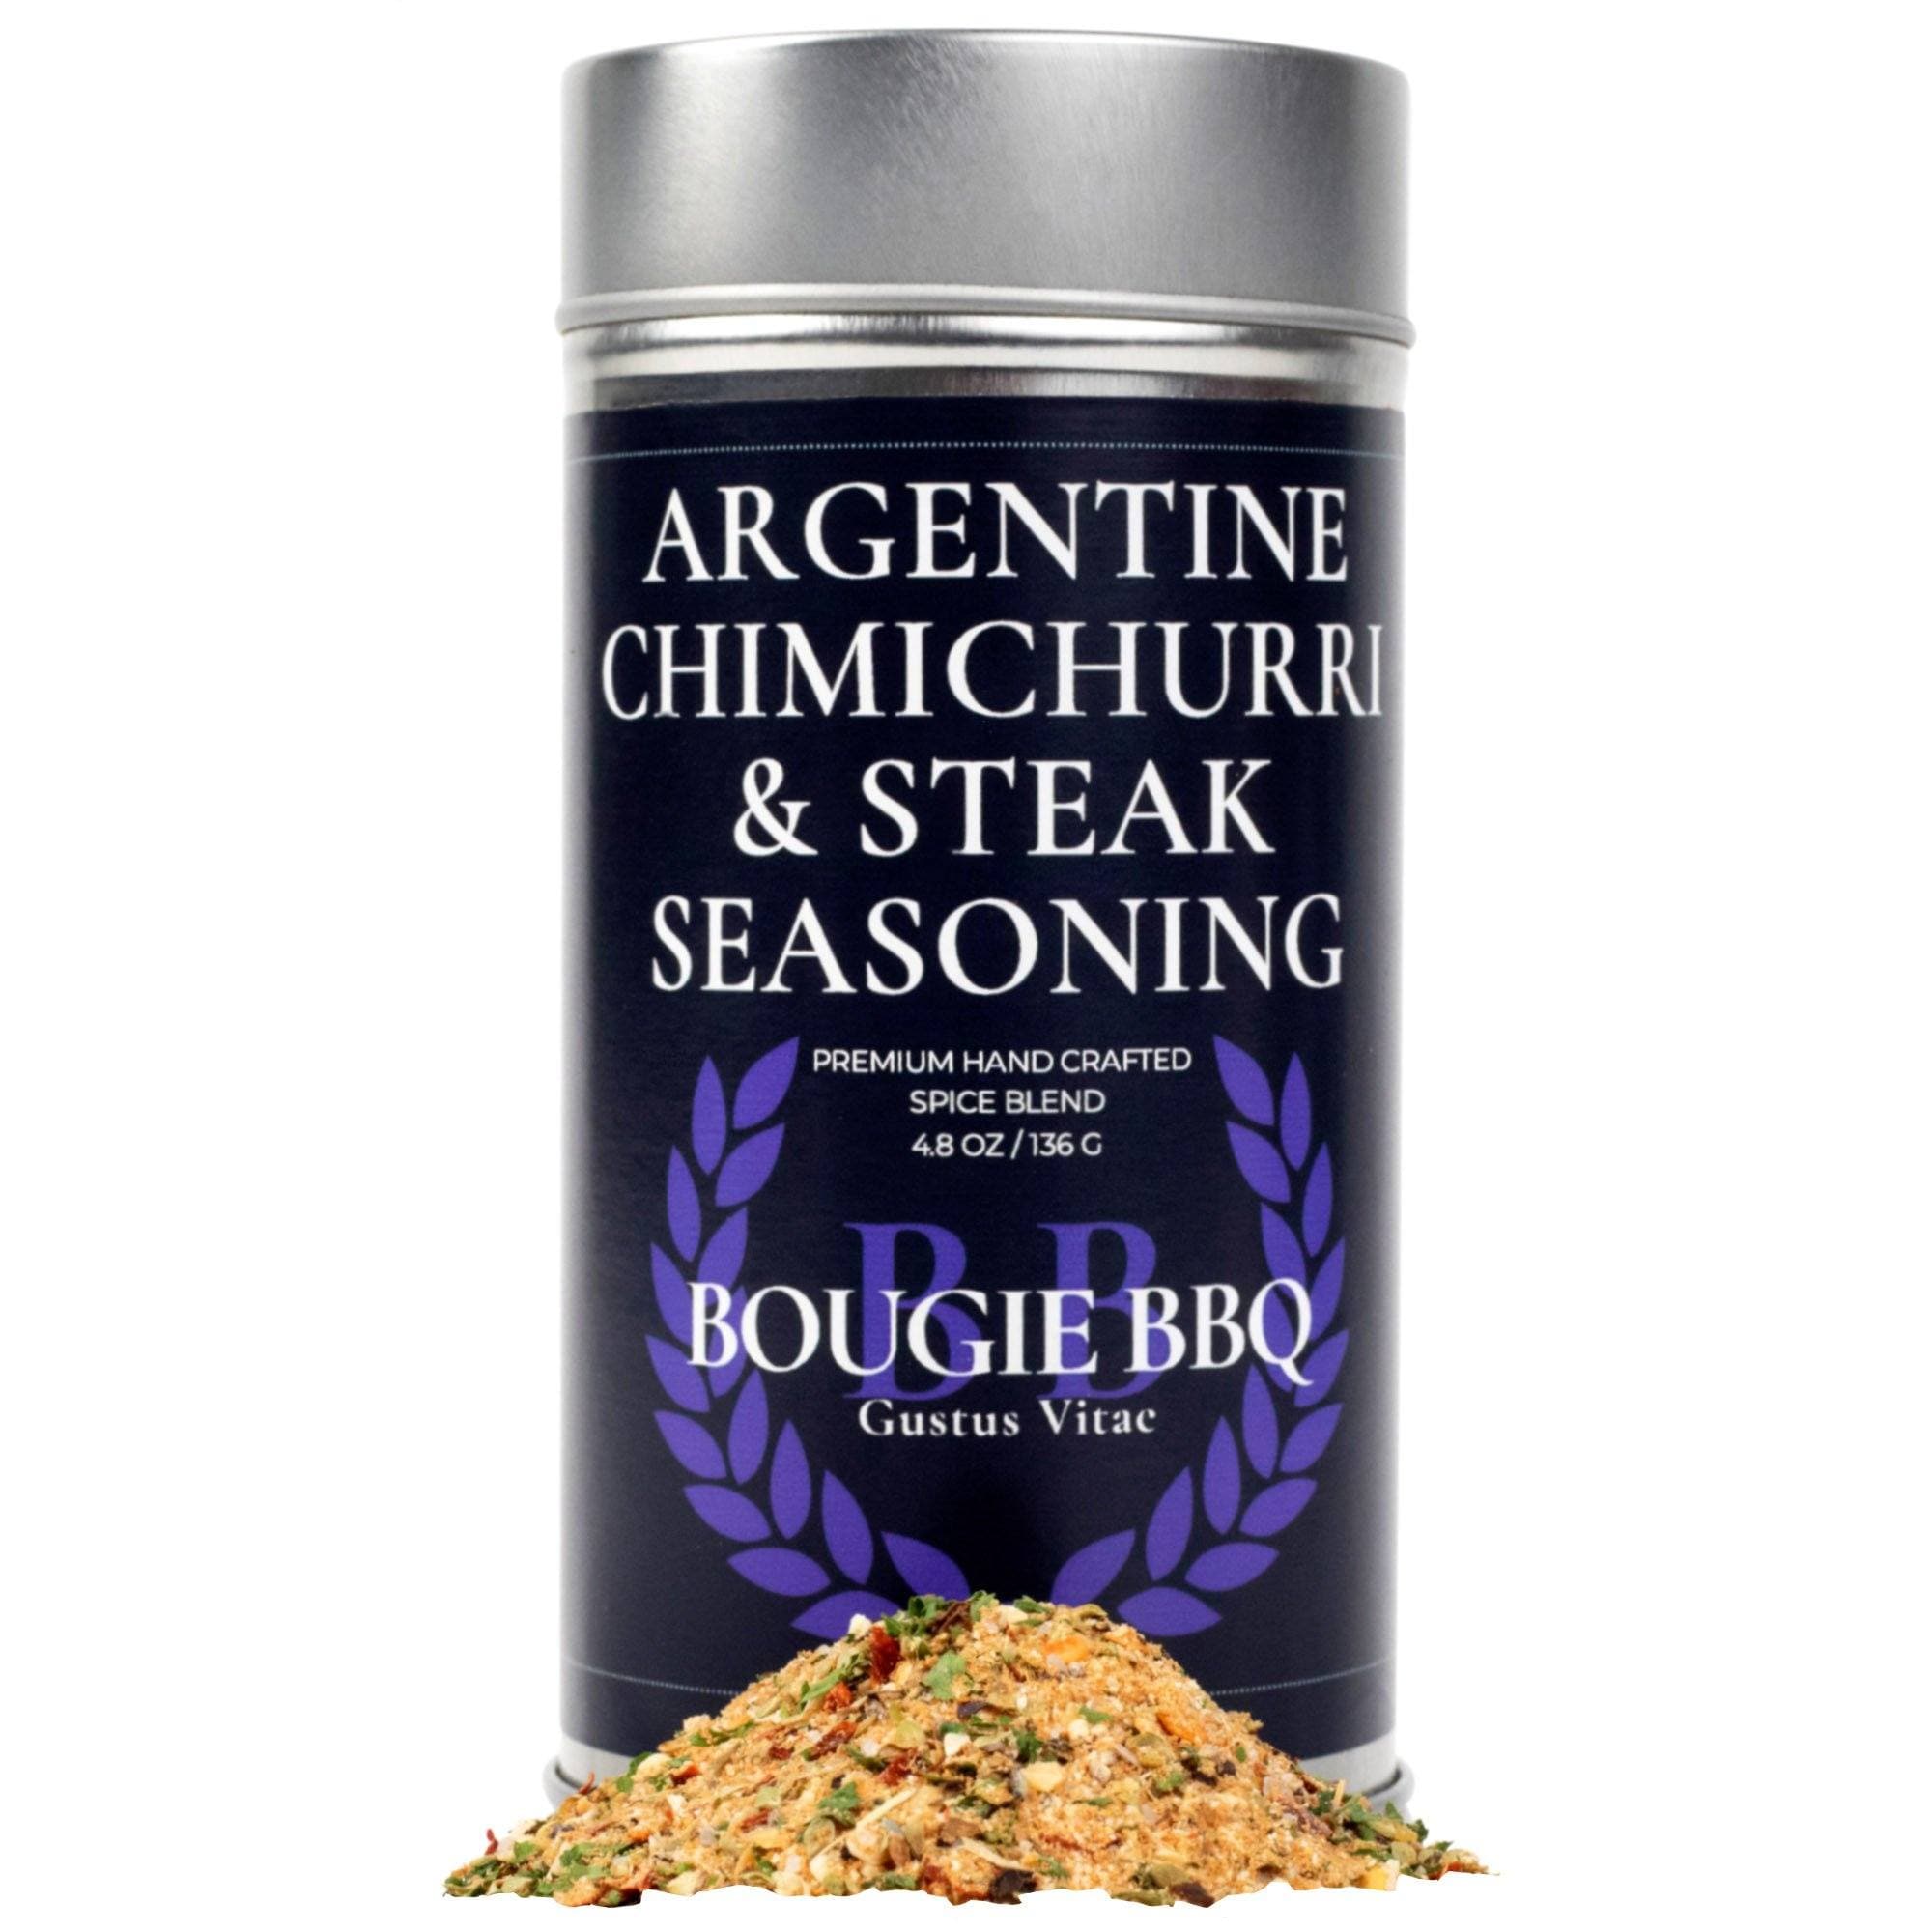 https://www.gustusvitae.com/cdn/shop/products/argentine-chimichurri-steak-seasoning-bougie-bbq-gustus-vitae-792299_2000x.jpg?v=1624076758